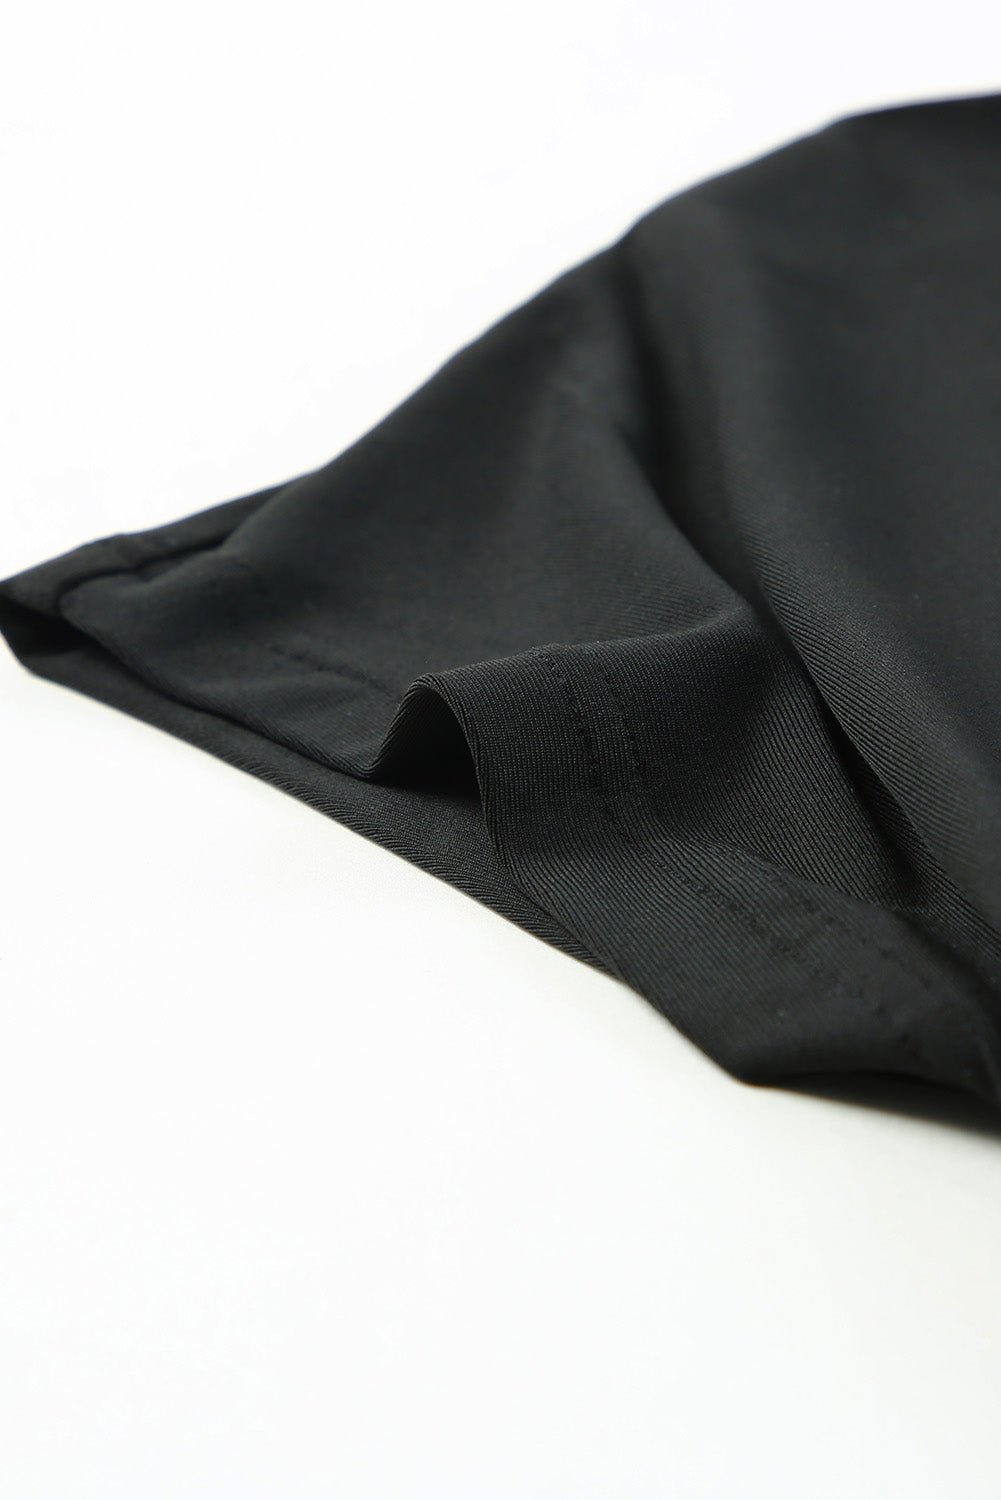 Suženi kombinezon kratkih rukava s crnom kravatom do struka